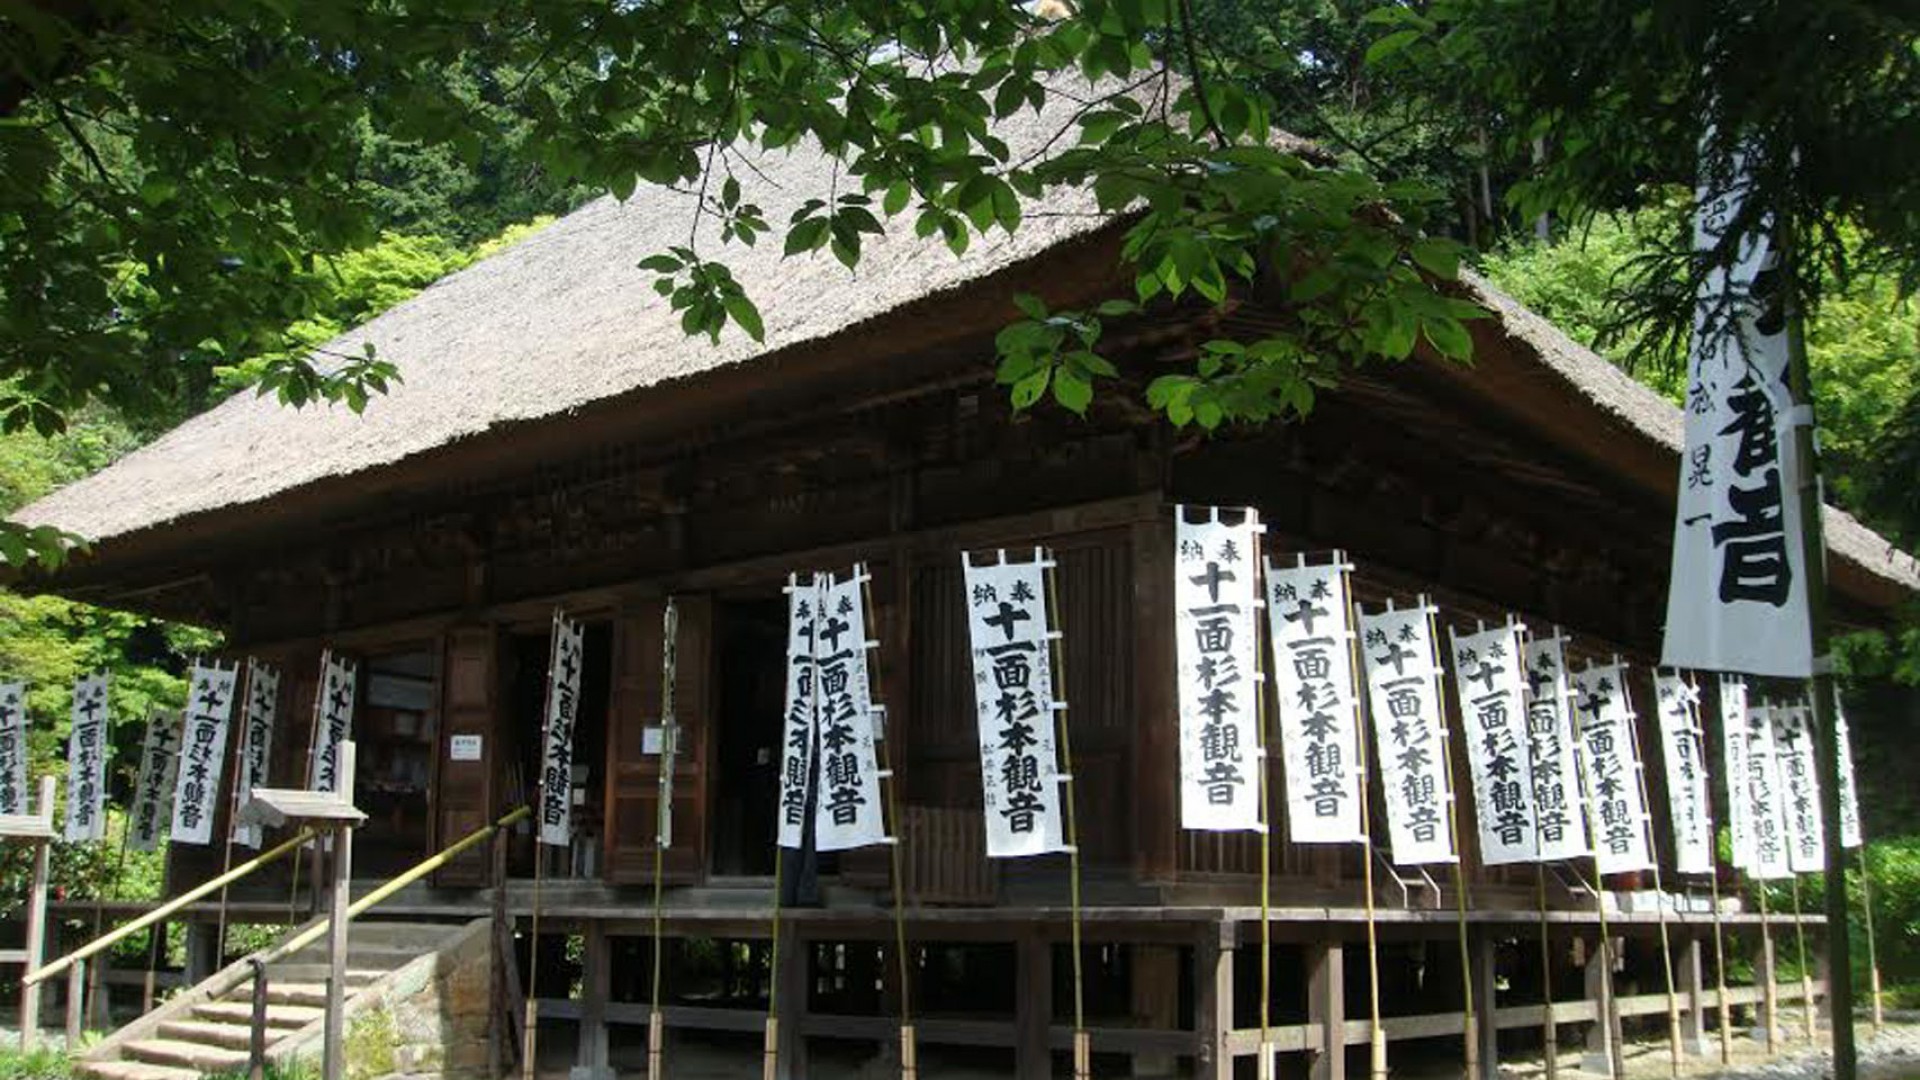 Temple Sugimoto-dera